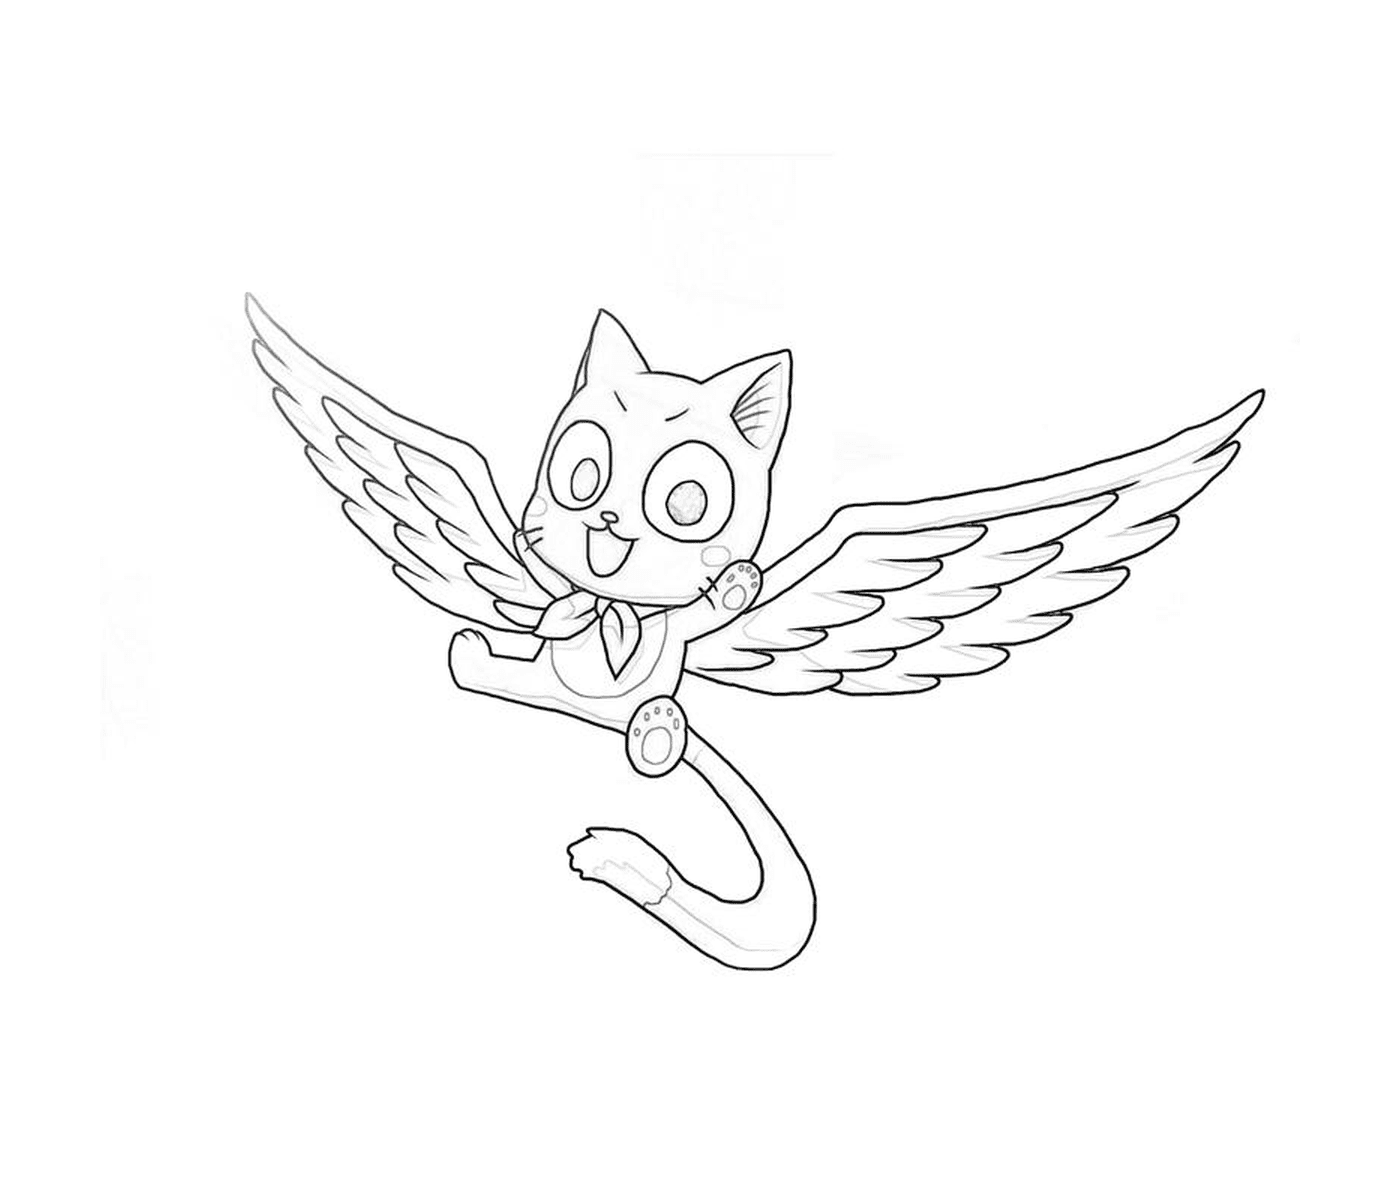  Um gato voador com asas 